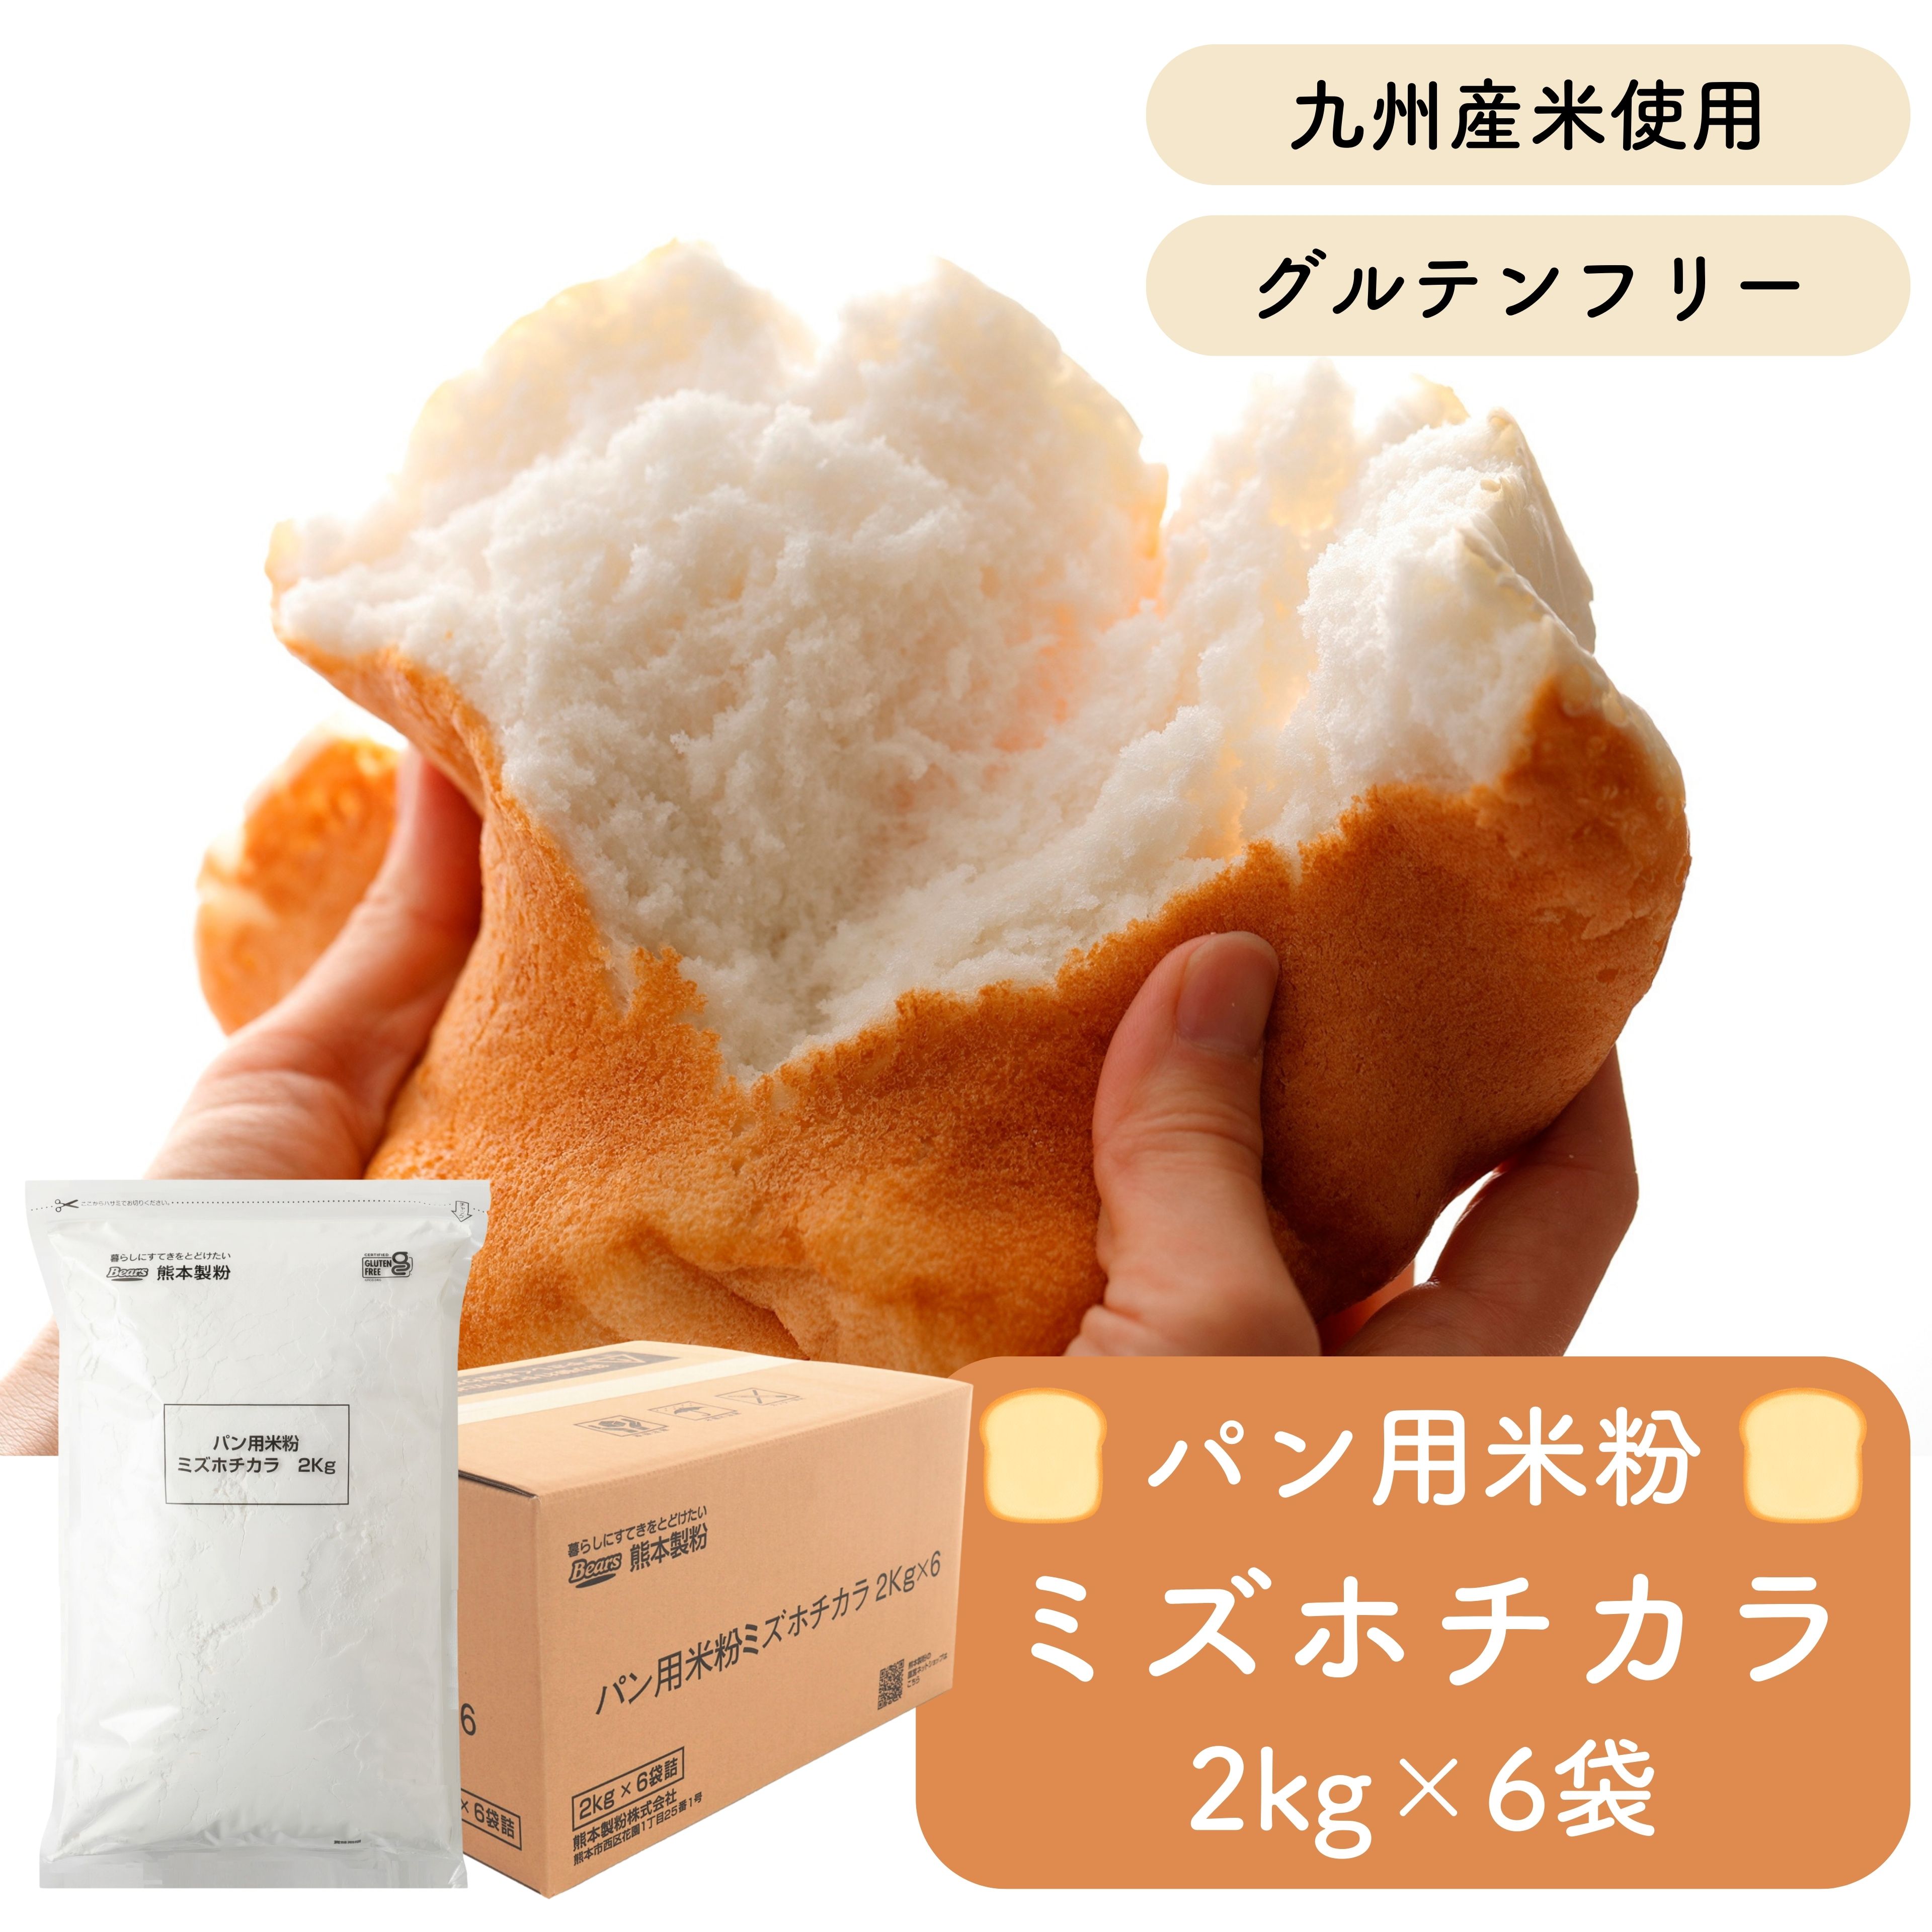 幸田商店 米の粉 (米粉) 500g